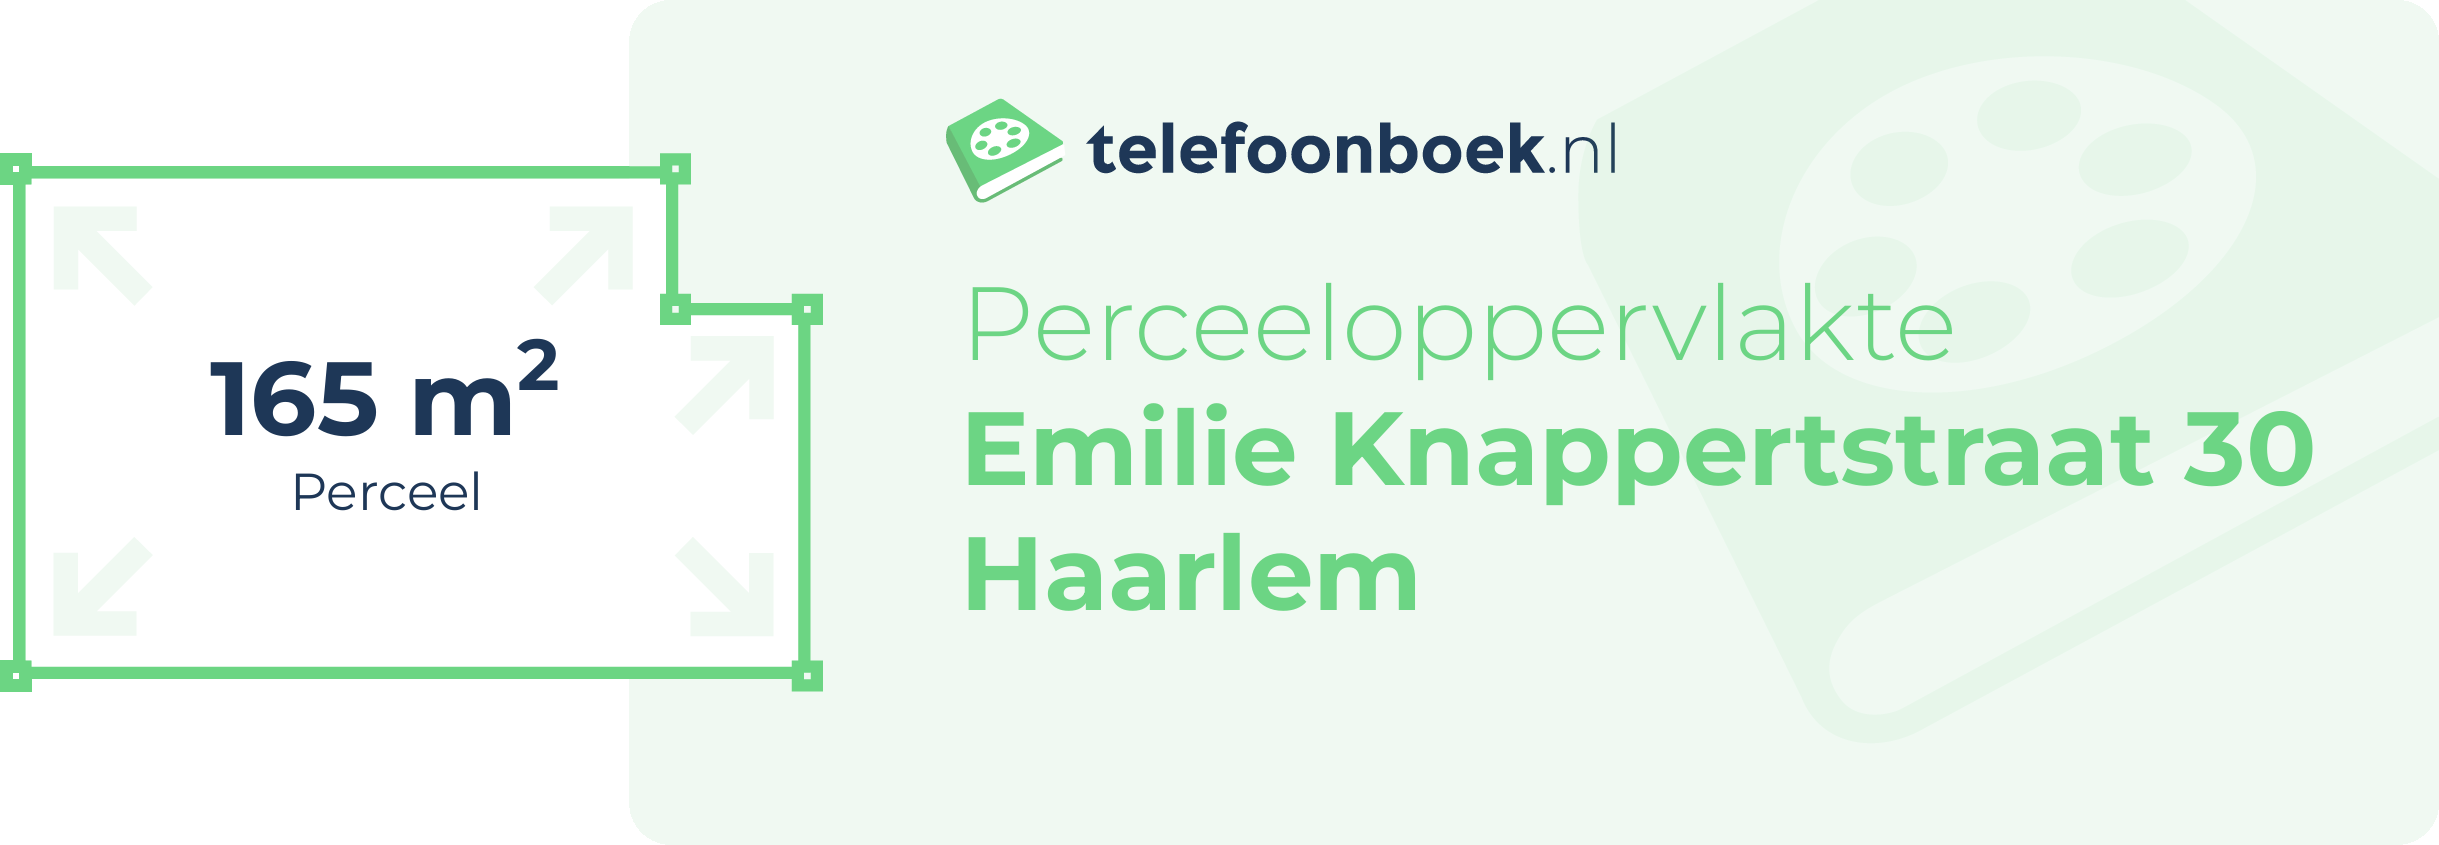 Perceeloppervlakte Emilie Knappertstraat 30 Haarlem